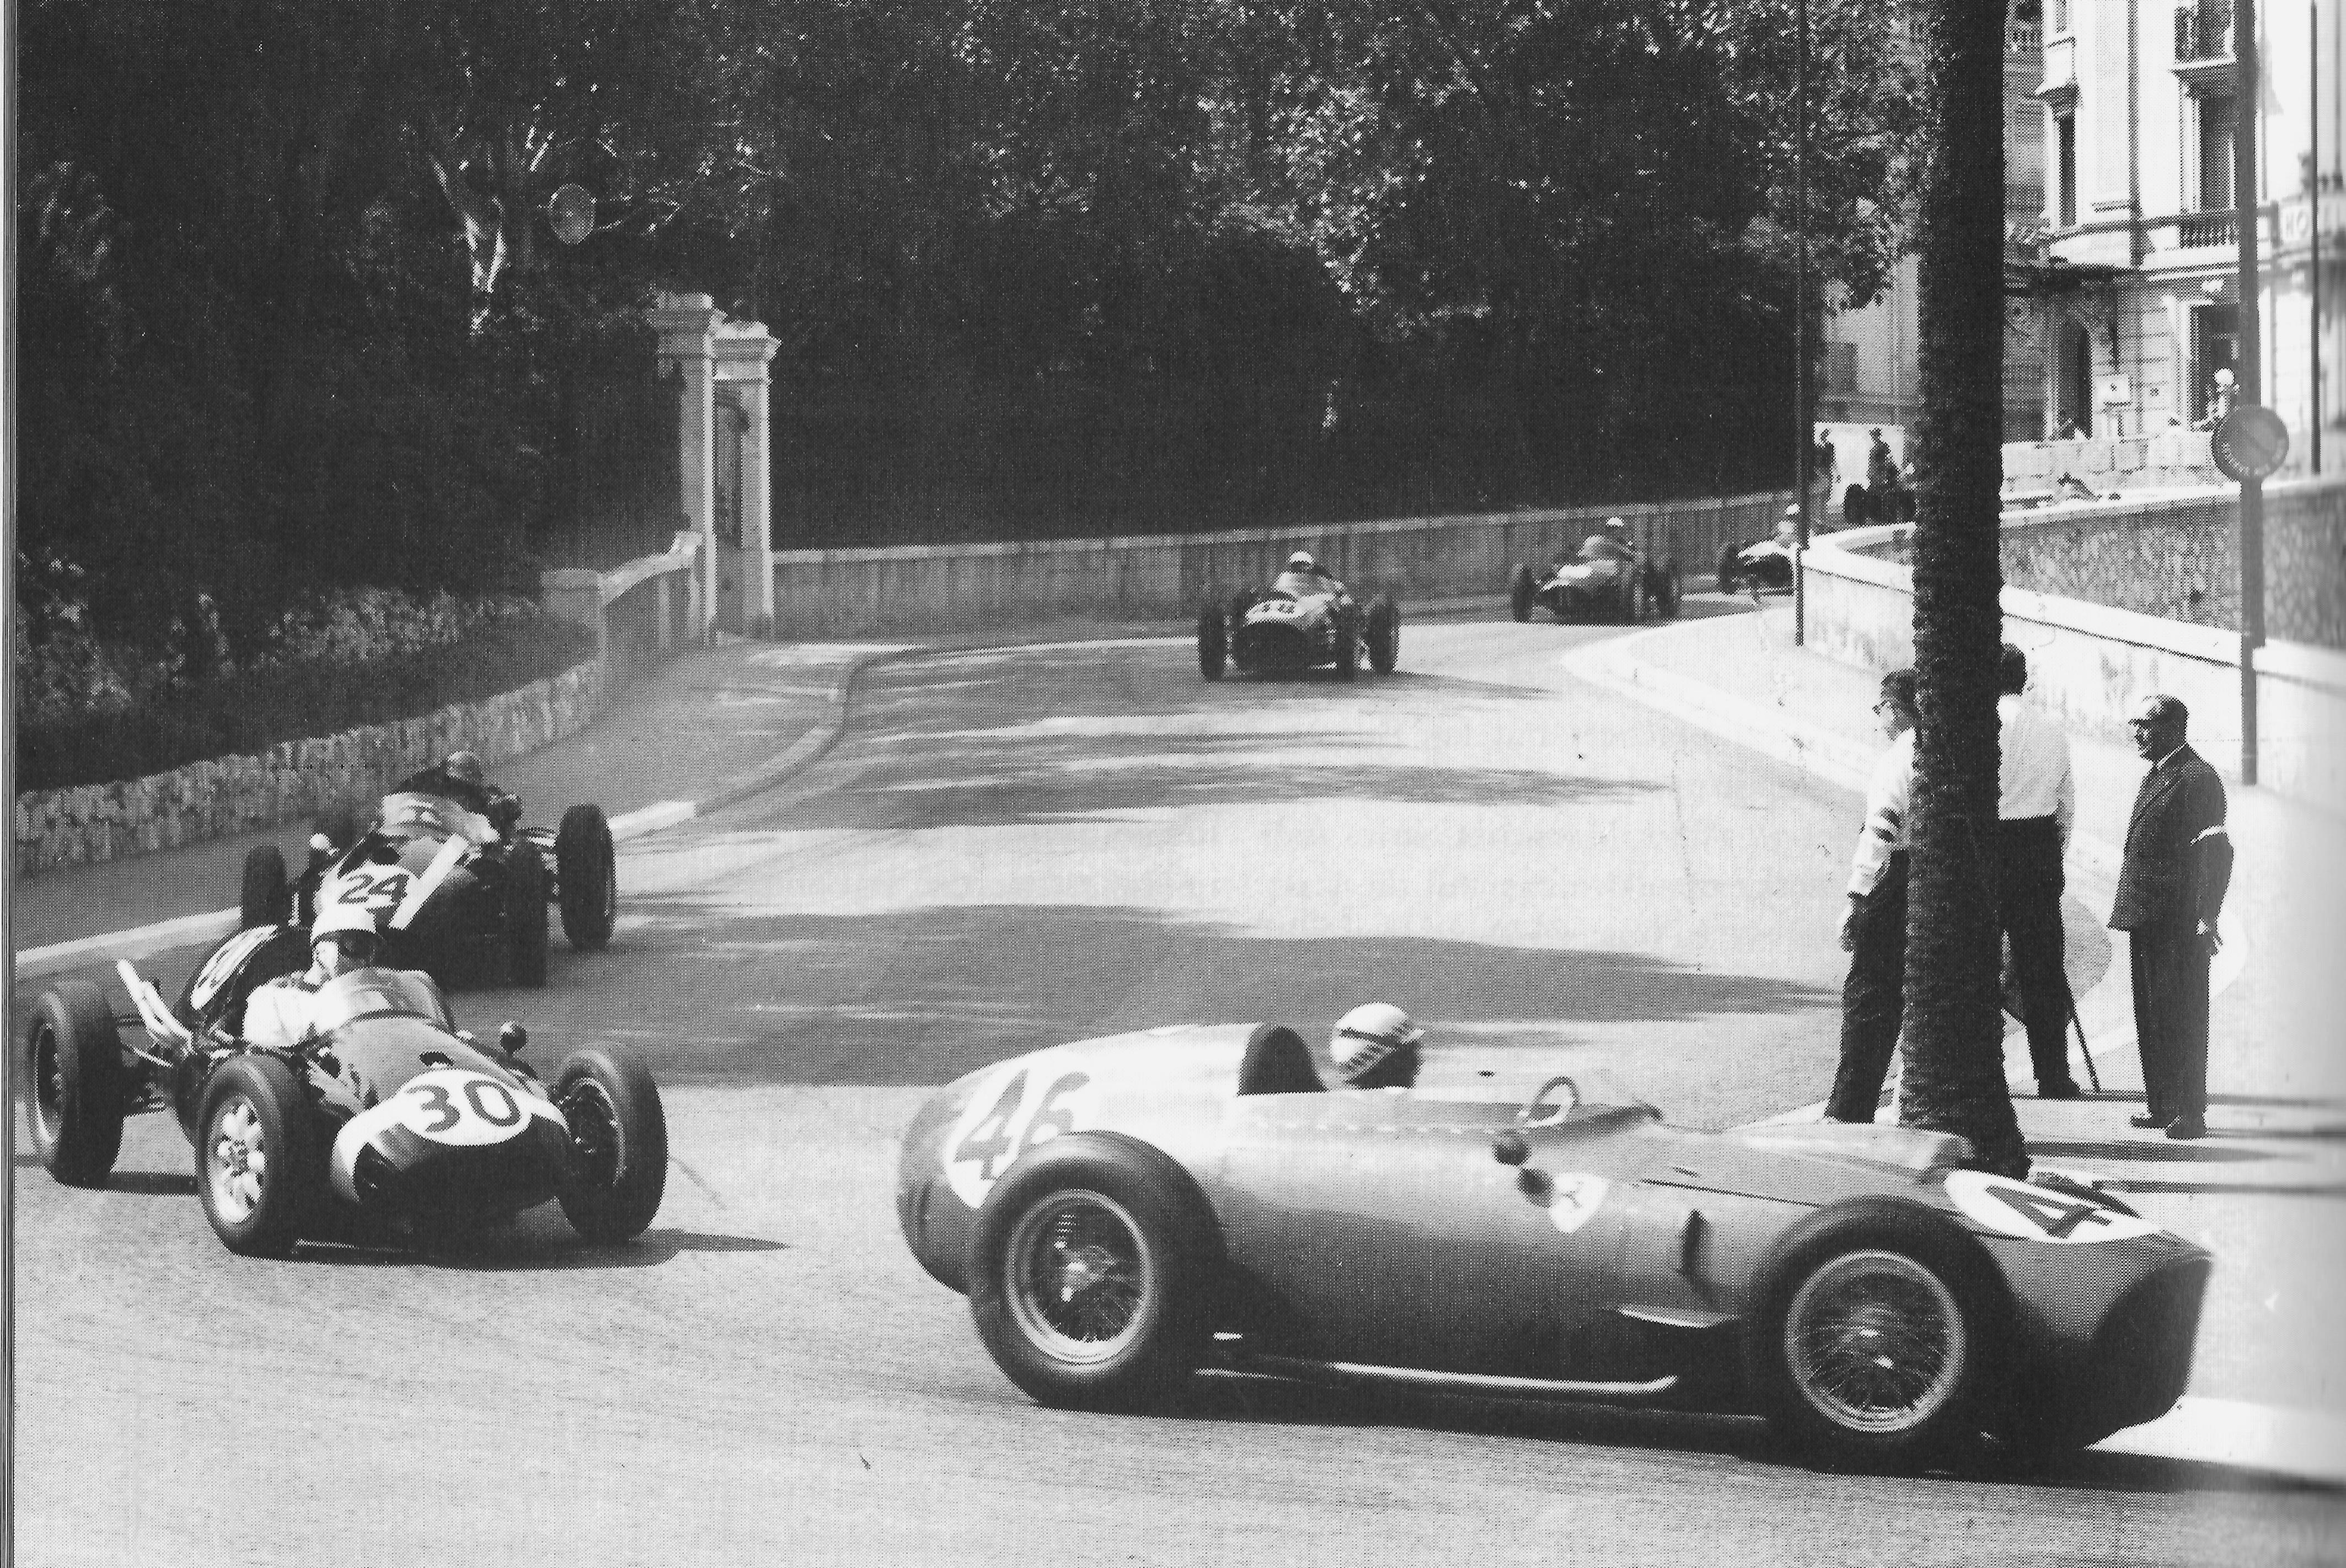 Re: FOTOS HISTORICAS DE FÓRMULA 1 (by @Scuderia_Fangio)